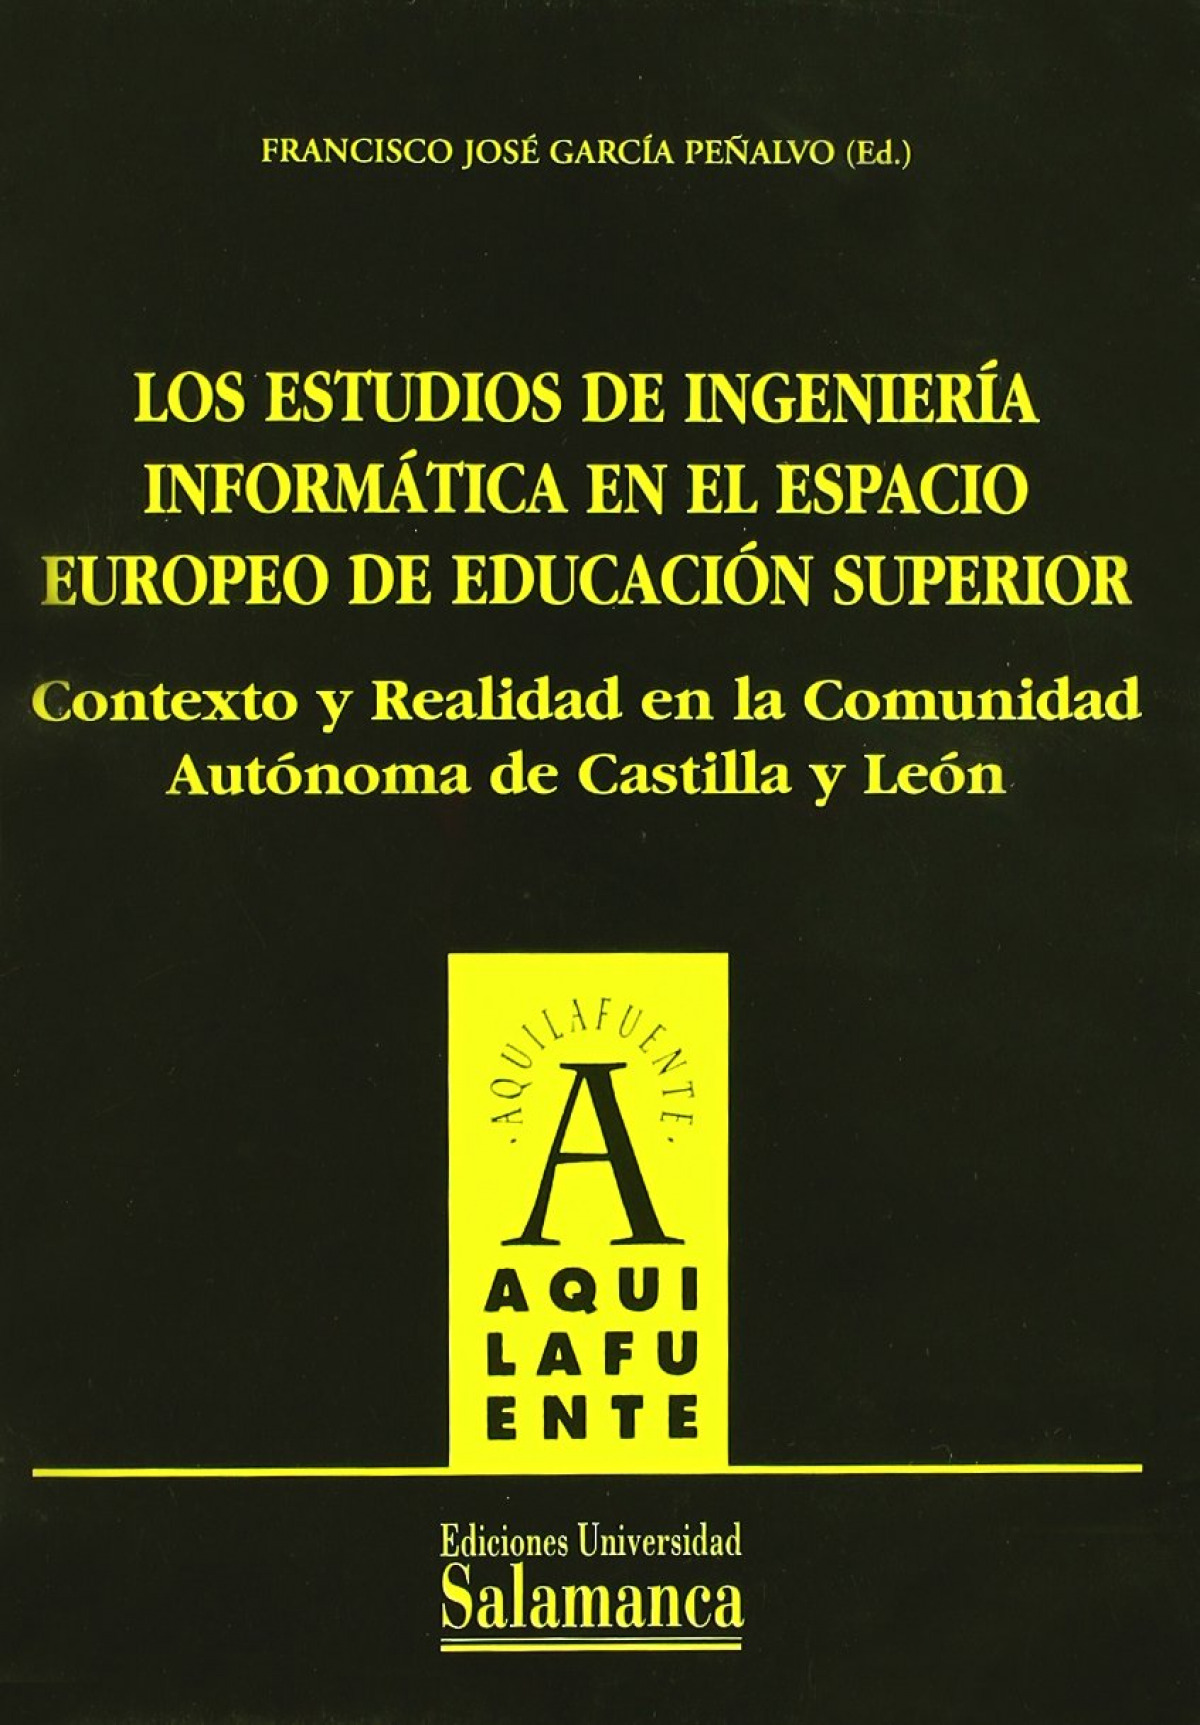 Los estudios de ingeniería informática en el Espacio Europeo de Educac - García Peñalvo, Francisco José (ed.)